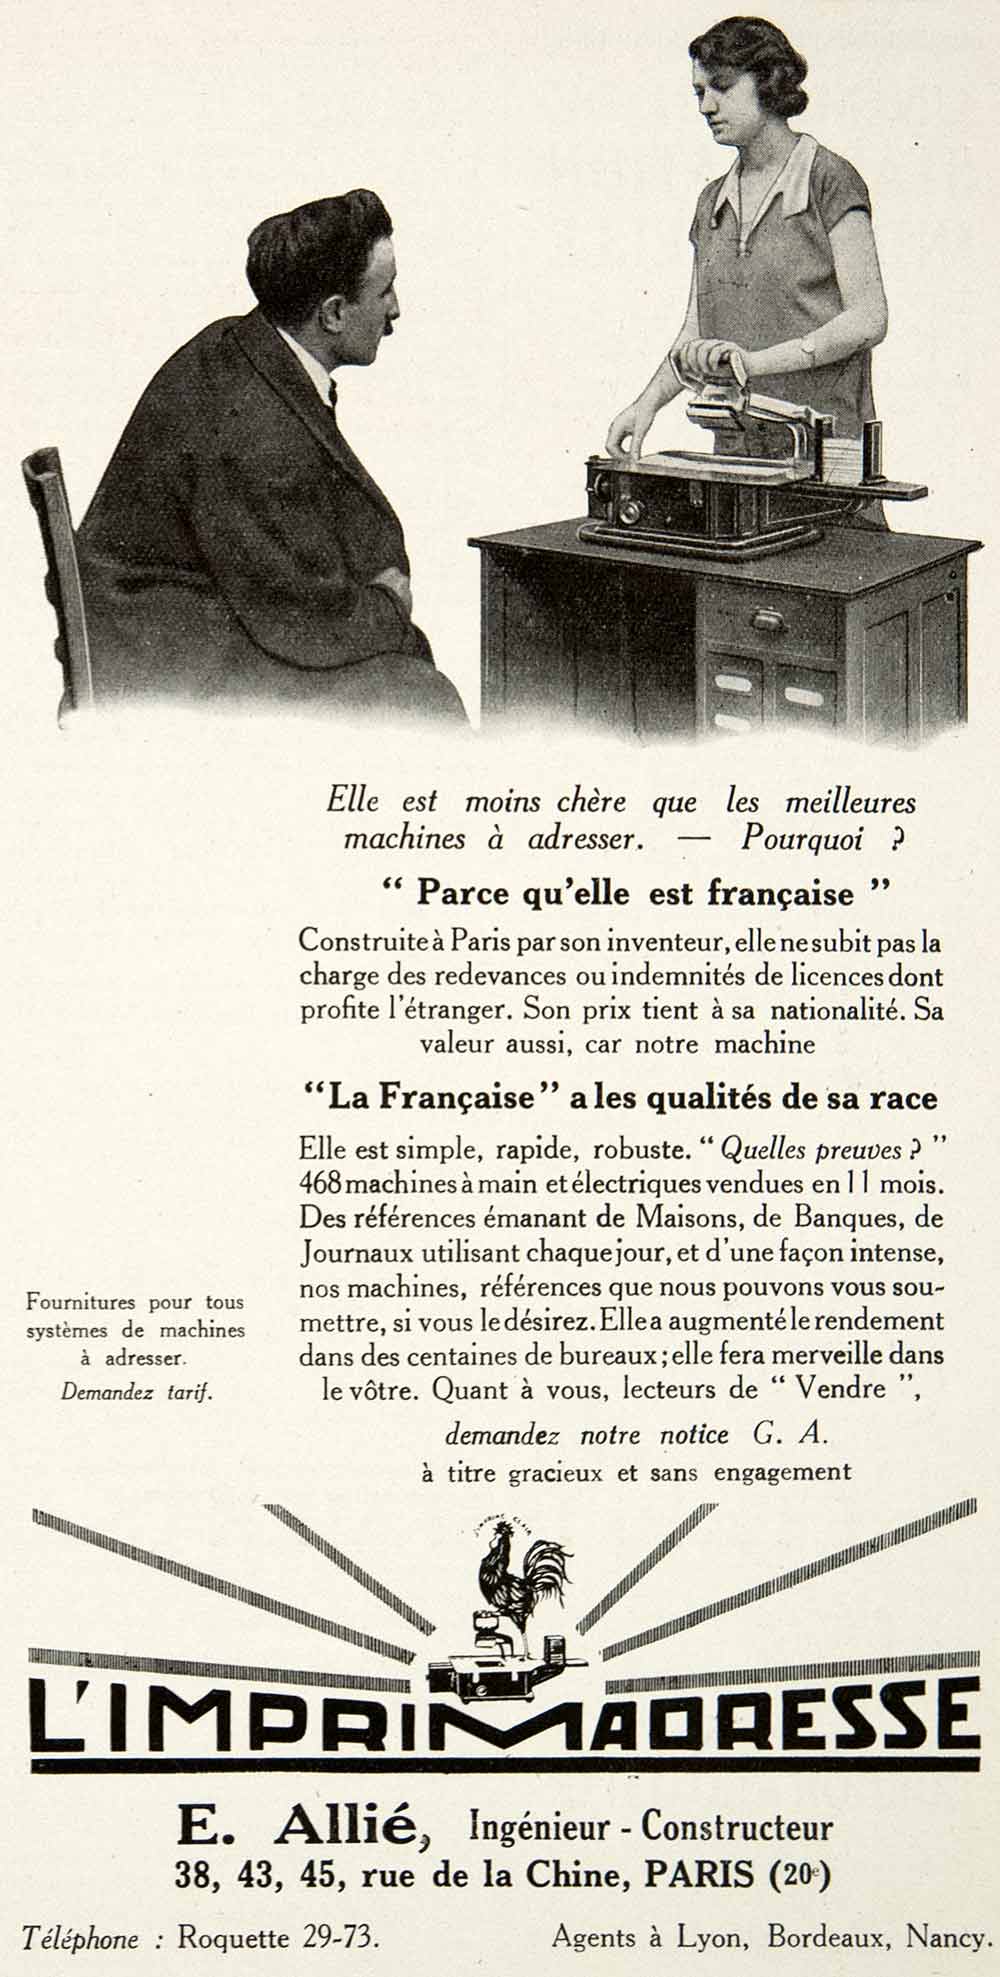 1925 Ad Imprimadresse Emile Allie Coq Printing Press 38 Rue Chine Paris VEN4